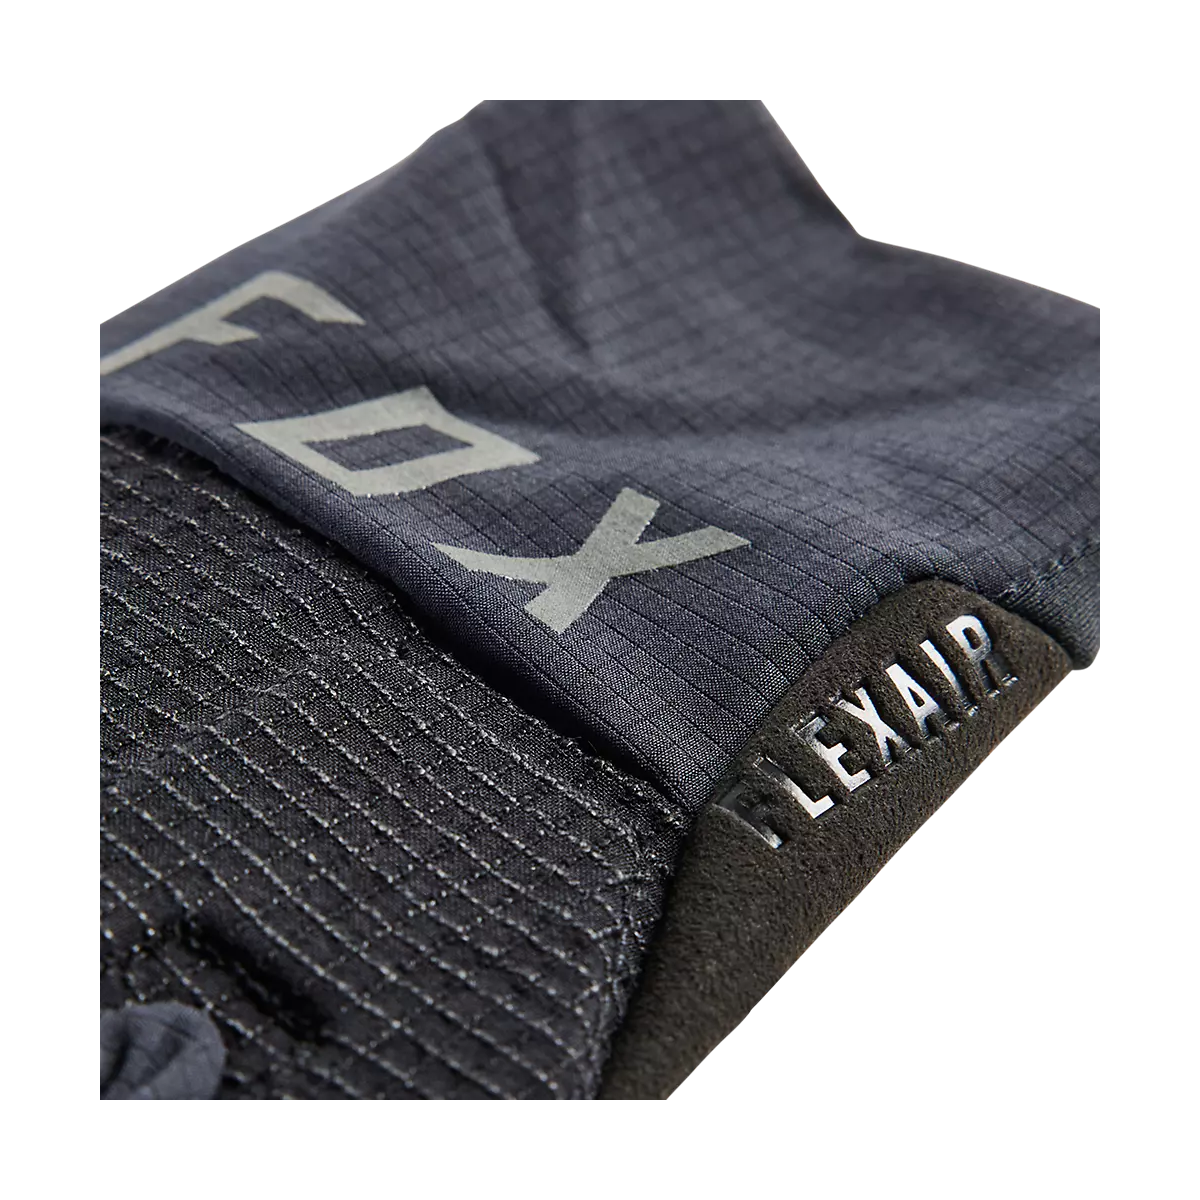 protección en los nudillos de los Guantes  de bicicleta Fox Flexair Pro  31023-001 en color negro